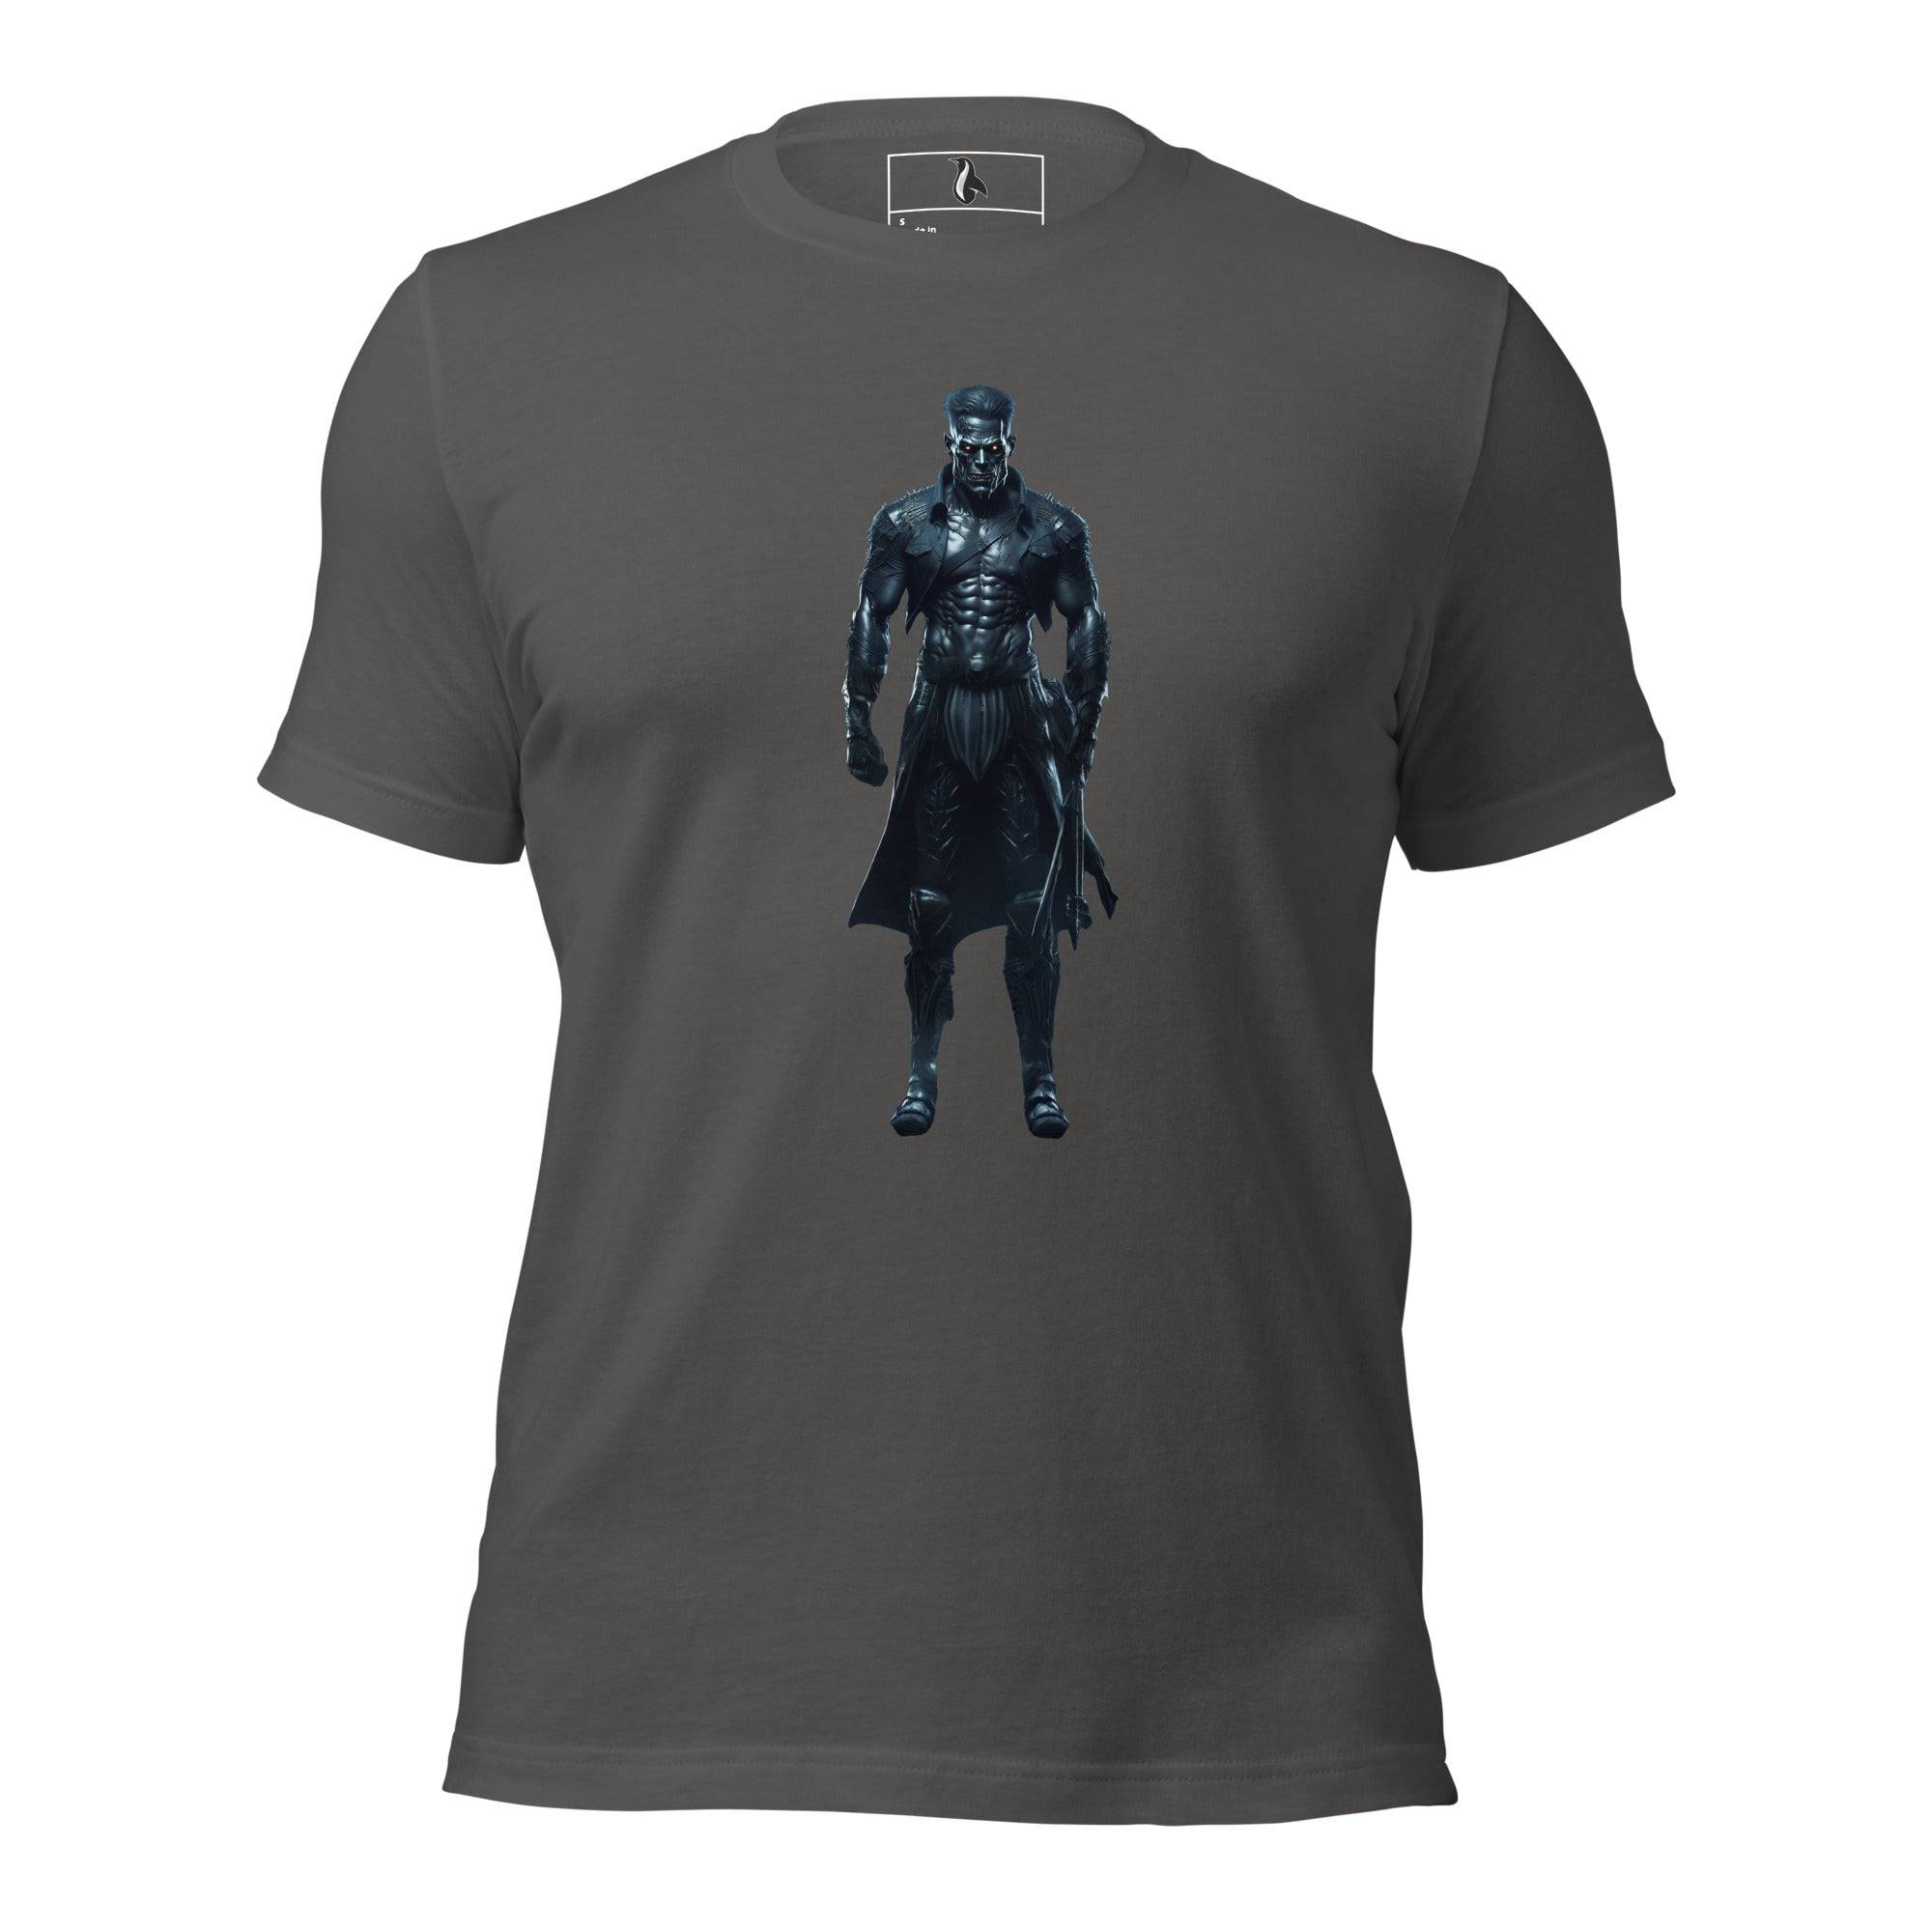 The Monster Squad "Frankenstein" Unisex t-shirt